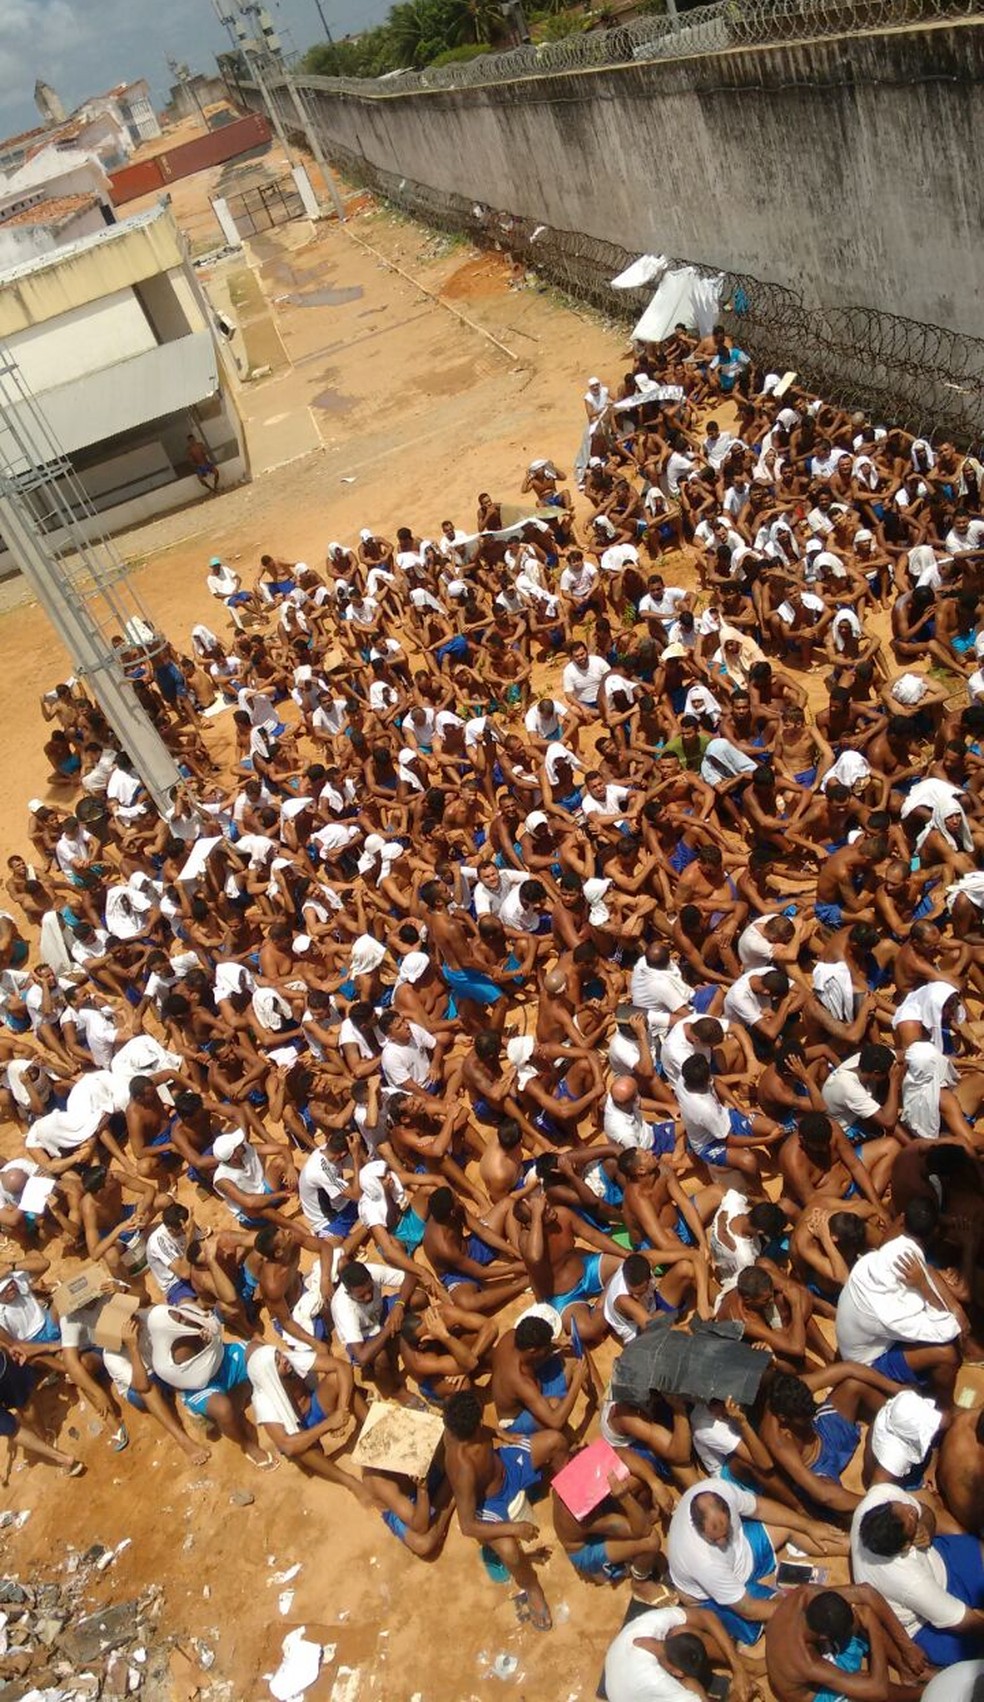 Penitenciária de Alcaçuz, maior presídio do RN, passou duas semanas rebelada; pelo menos 26 detentos foram mortos durante confronto envolvendo facções criminosas rivais  (Foto: Divulgação/GOE)